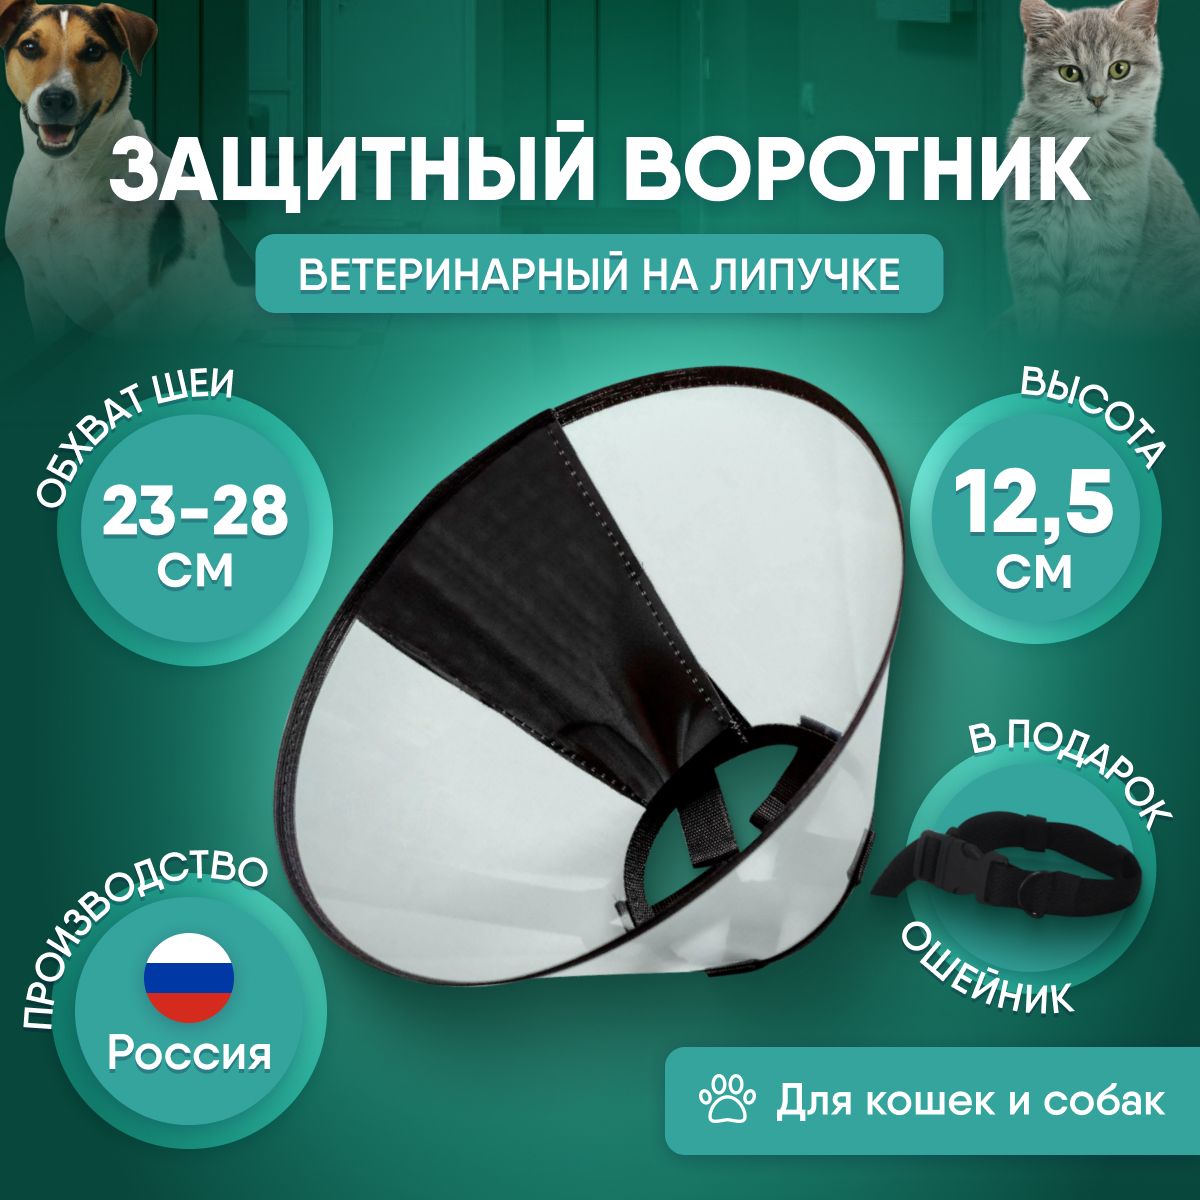 Ветеринарный послеоперационный воротник для кошек и собак купить в Екатеринбурге